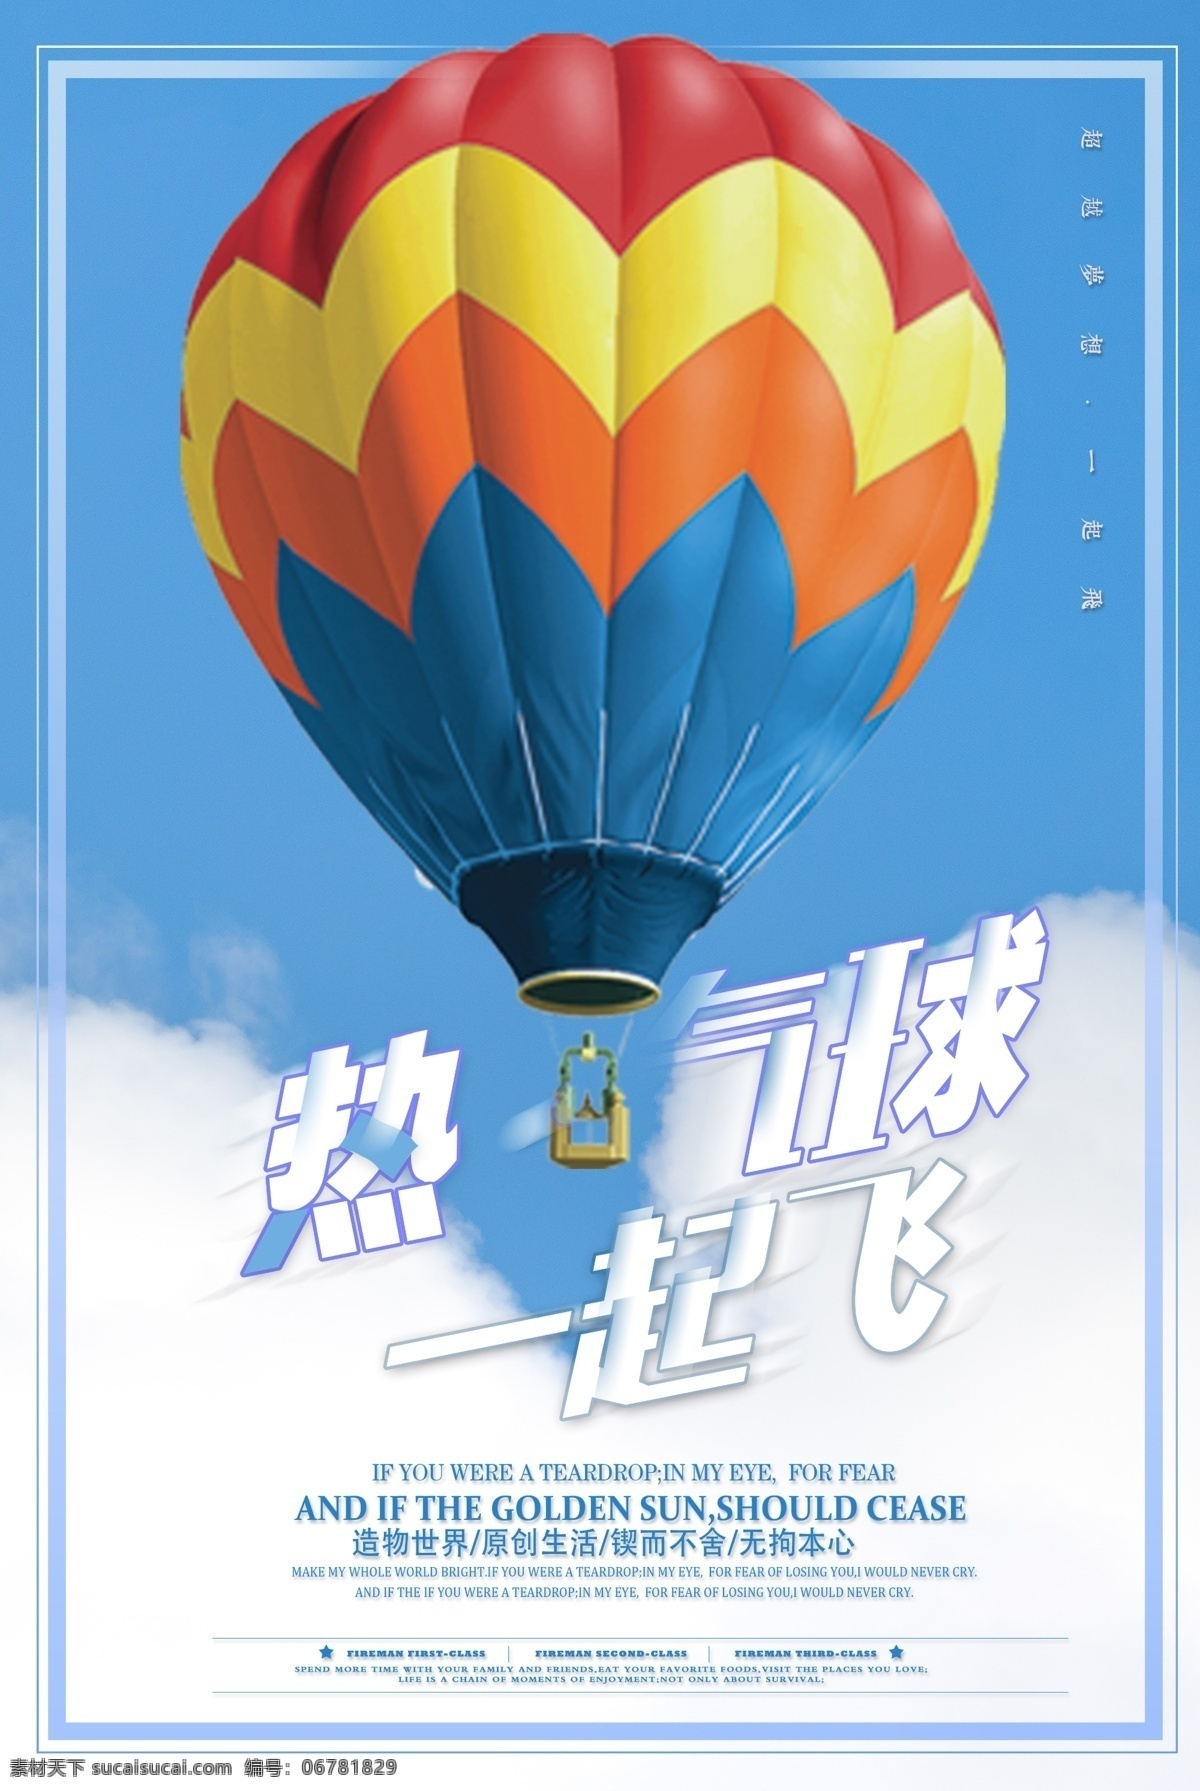 冬季 旅行 特色 热气球 环游 淡 蓝色 海报 气球 卡通热气球 热气球矢量 矢量热气球 热气球cdr 蓝色热气球 红色热气球 粉色热气球 绿色热气球 深蓝热气球 翠绿热气球 大红热气球 运动